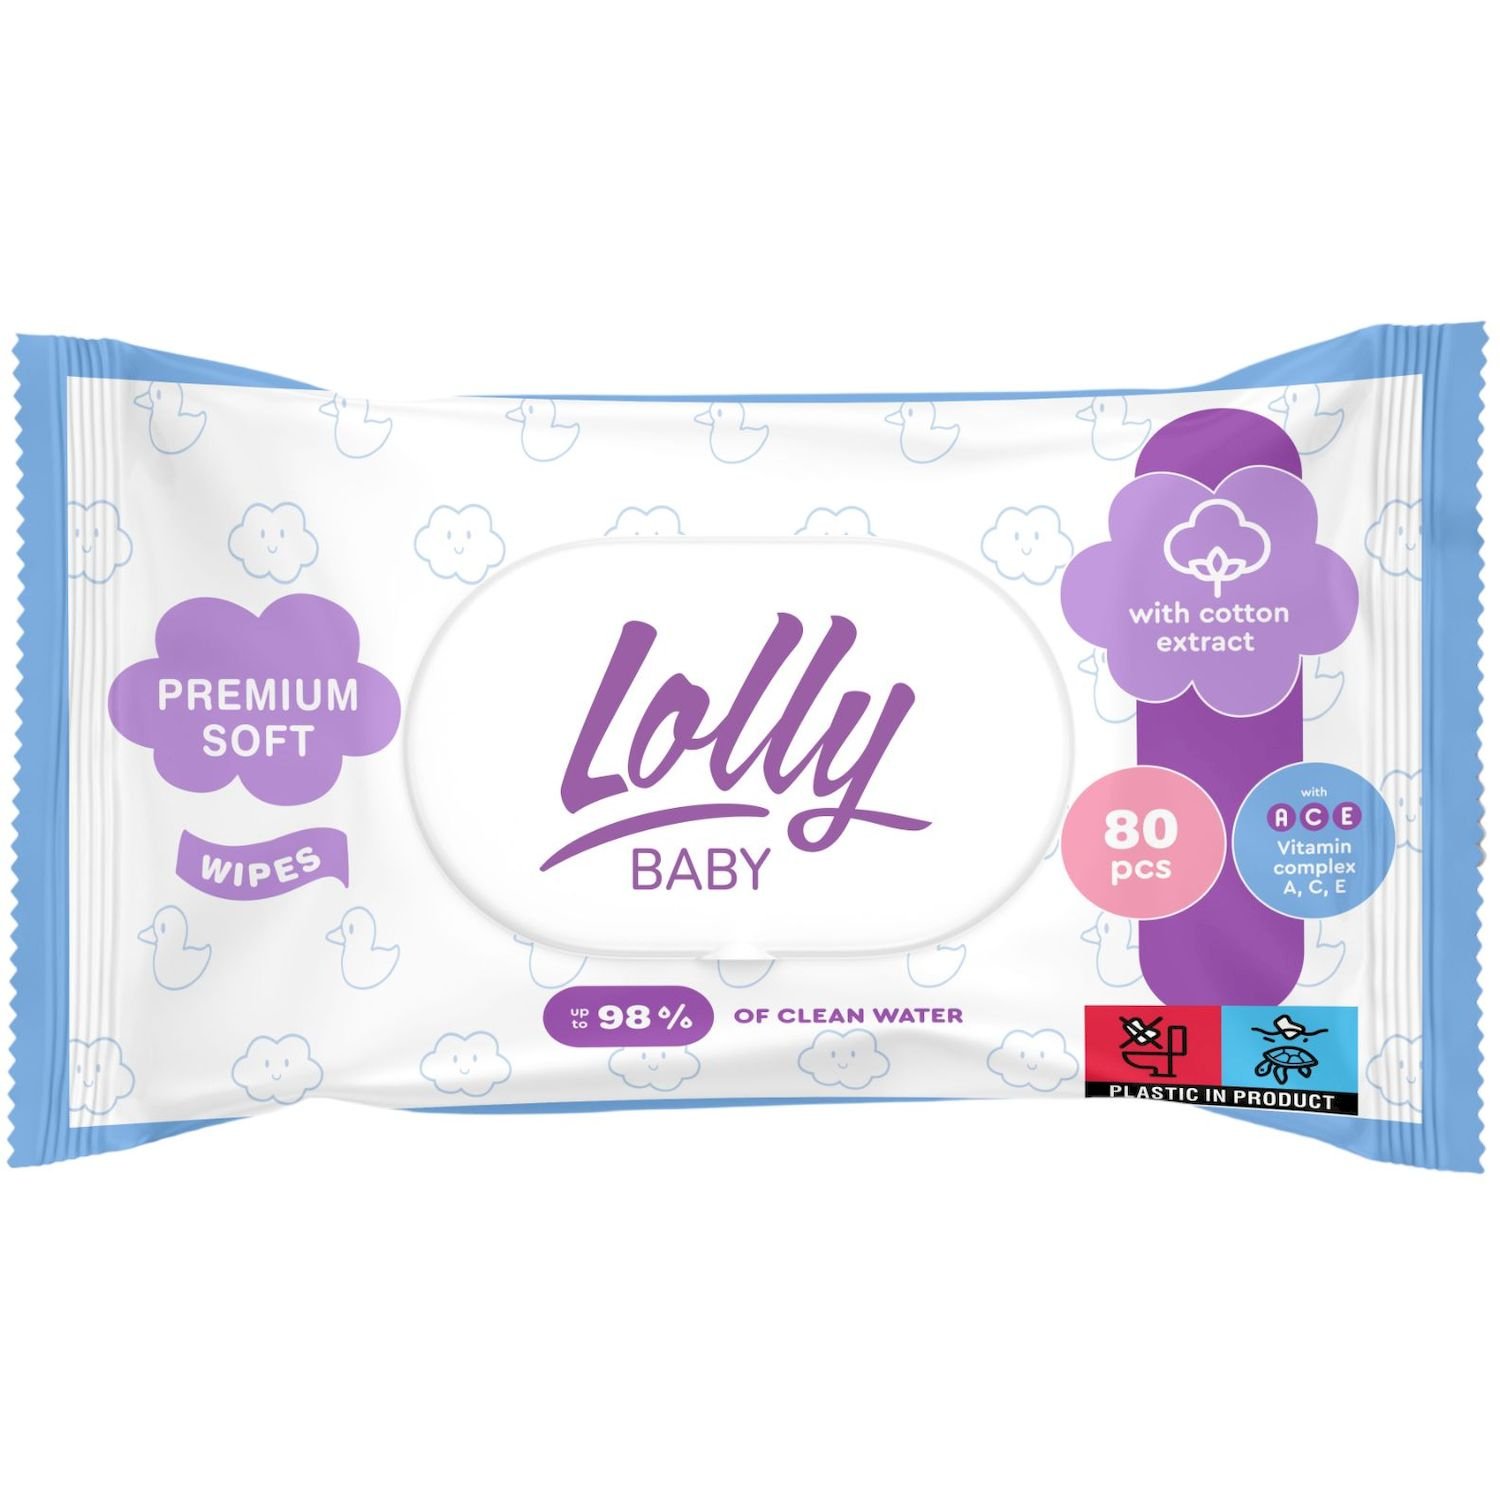 Влажные салфетки Lolly Baby Premium Soft, с клапаном, 80 шт. - фото 1